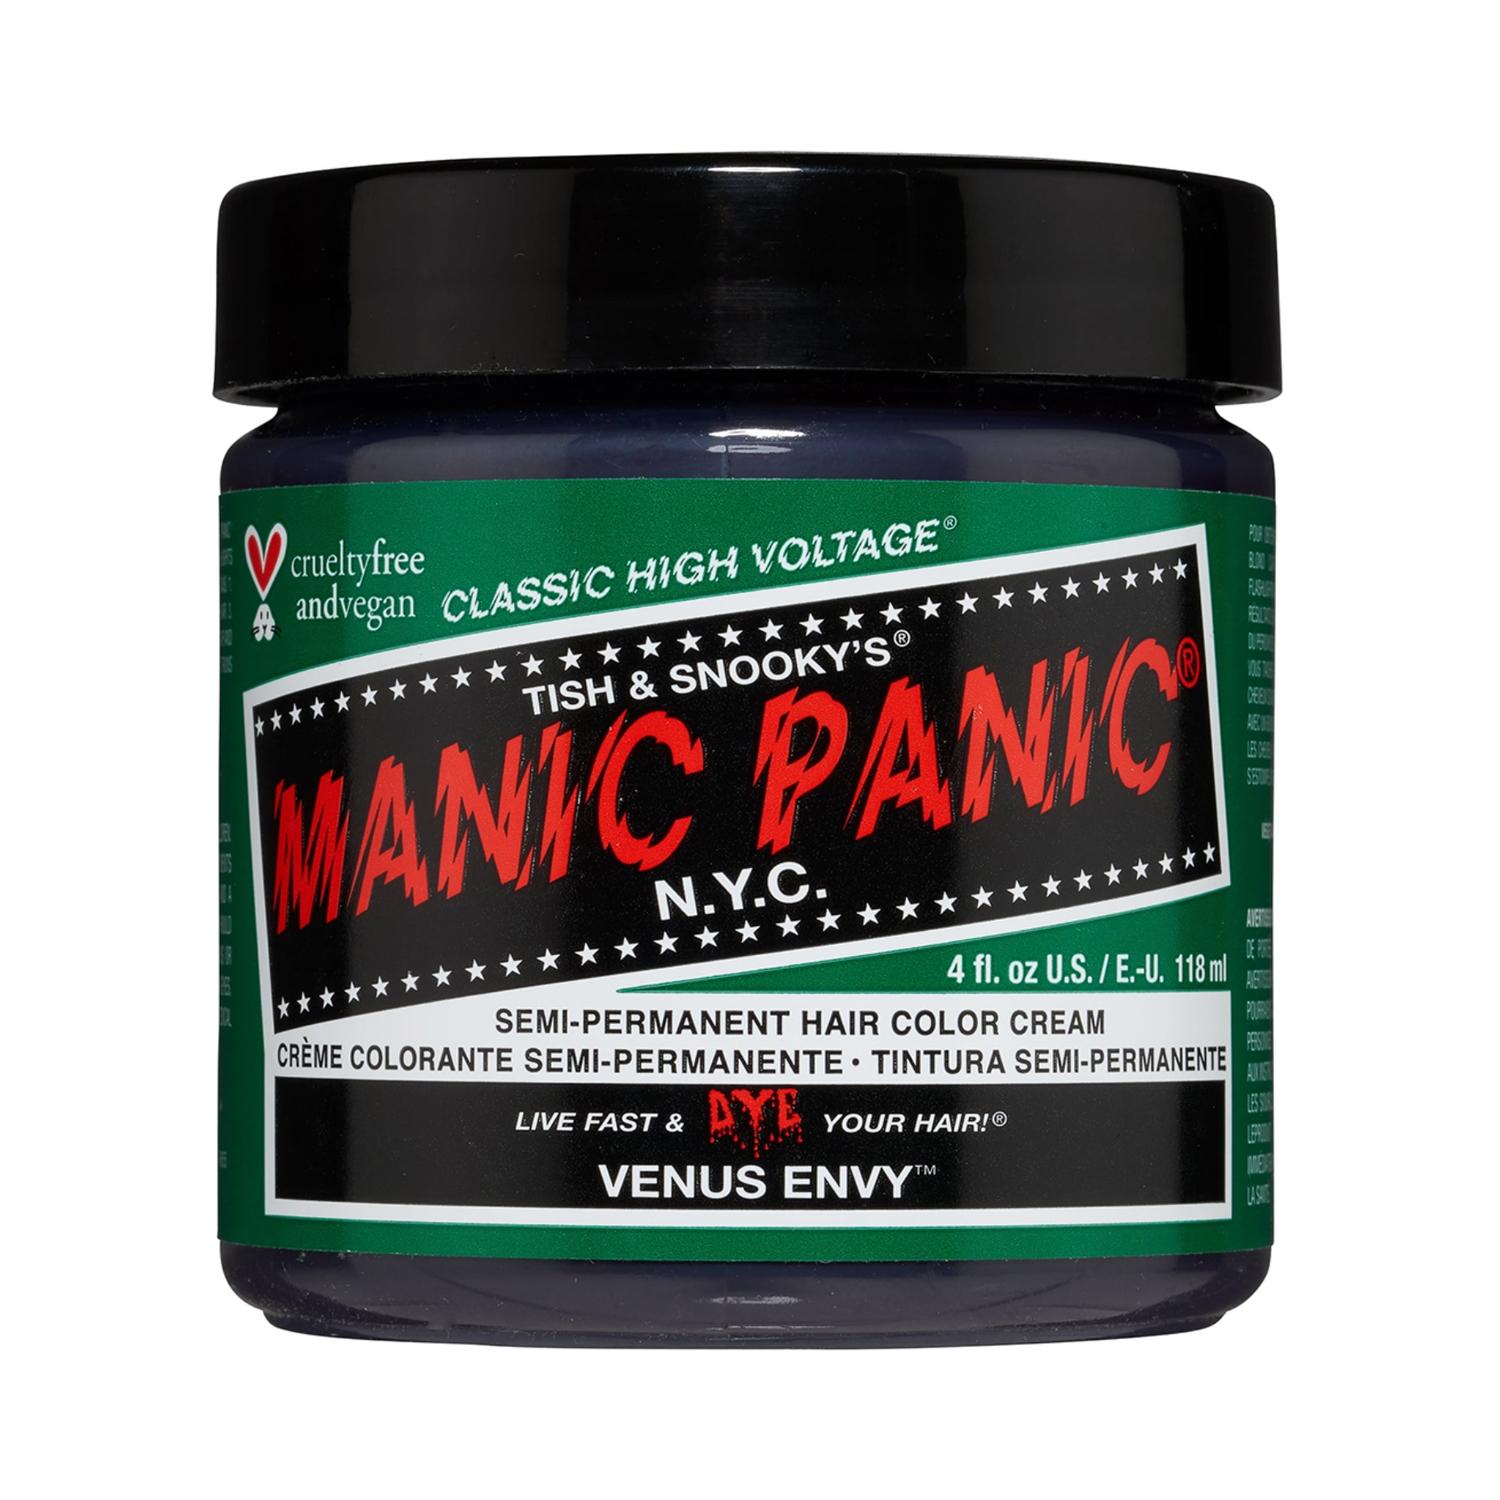 manic-panic-classic-high-voltage-semi-permanent-hair-color-cream---venus-envy-(118ml)